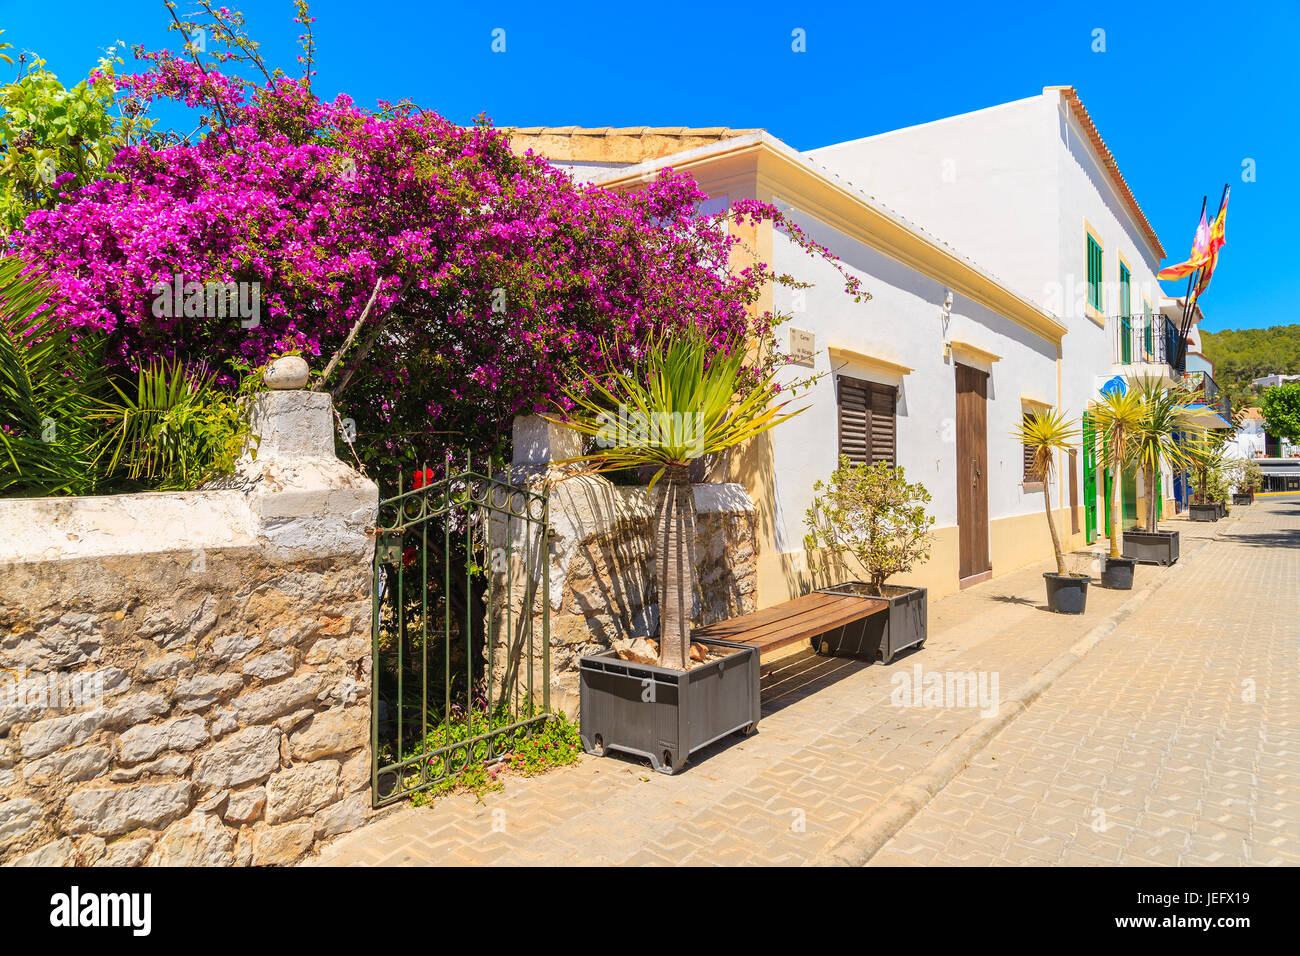 Insel IBIZA, Spanien - 19. Mai 2017: Typisch spanischen Stil Häuser in Straße von Sant Josep de sa Talaia Stadt, Insel Ibiza, Spanien. Stockfoto